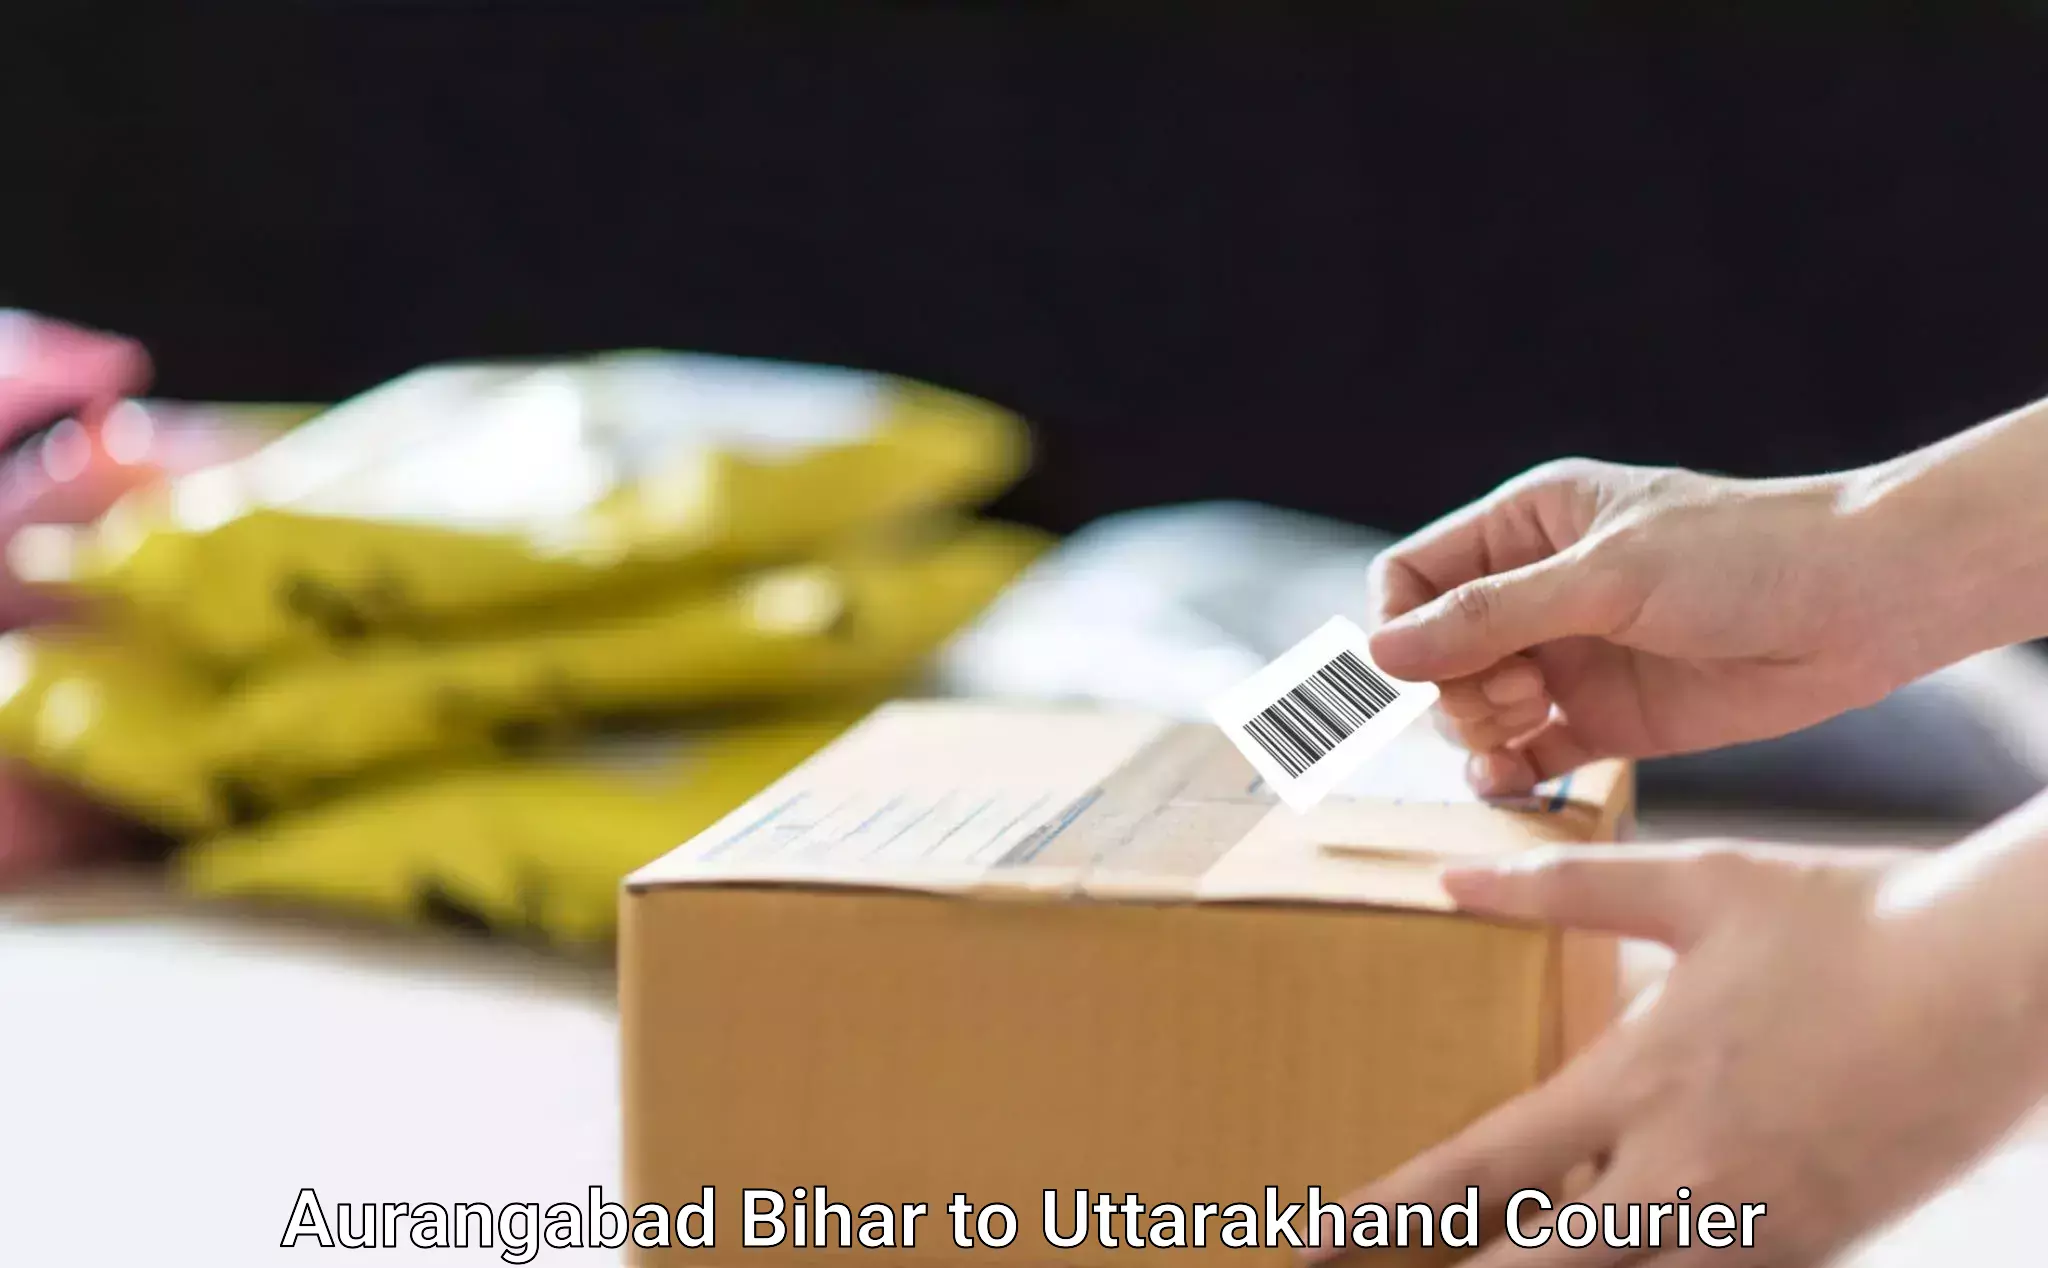 Efficient home movers in Aurangabad Bihar to Haridwar